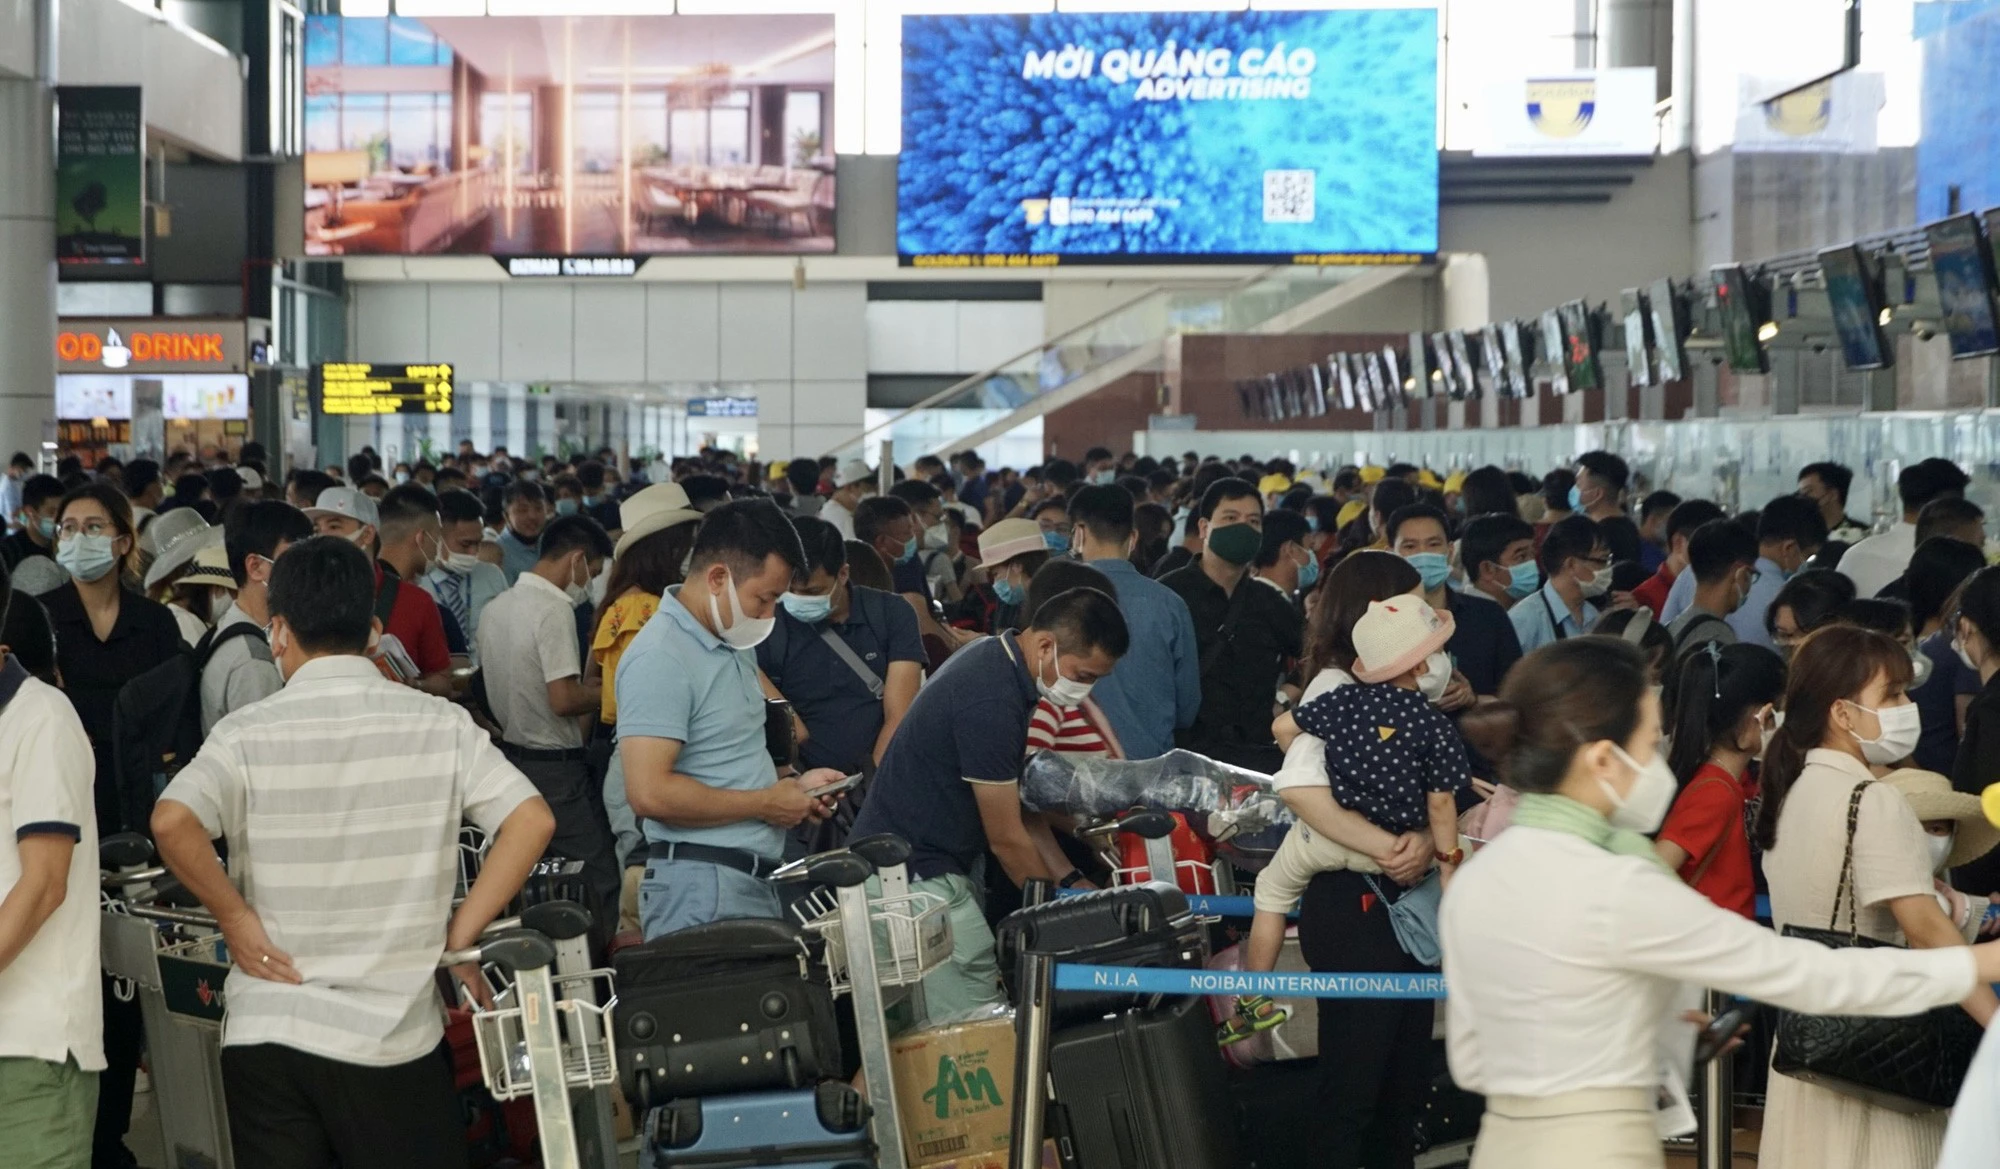 Sân bay Nội Bài và Tân Sơn Nhất dự kiến đón gần 1 triệu lượt người dịp nghỉ lễ 30/4, hành khách cần lưu ý những gì khi đi máy bay? - Ảnh 1.